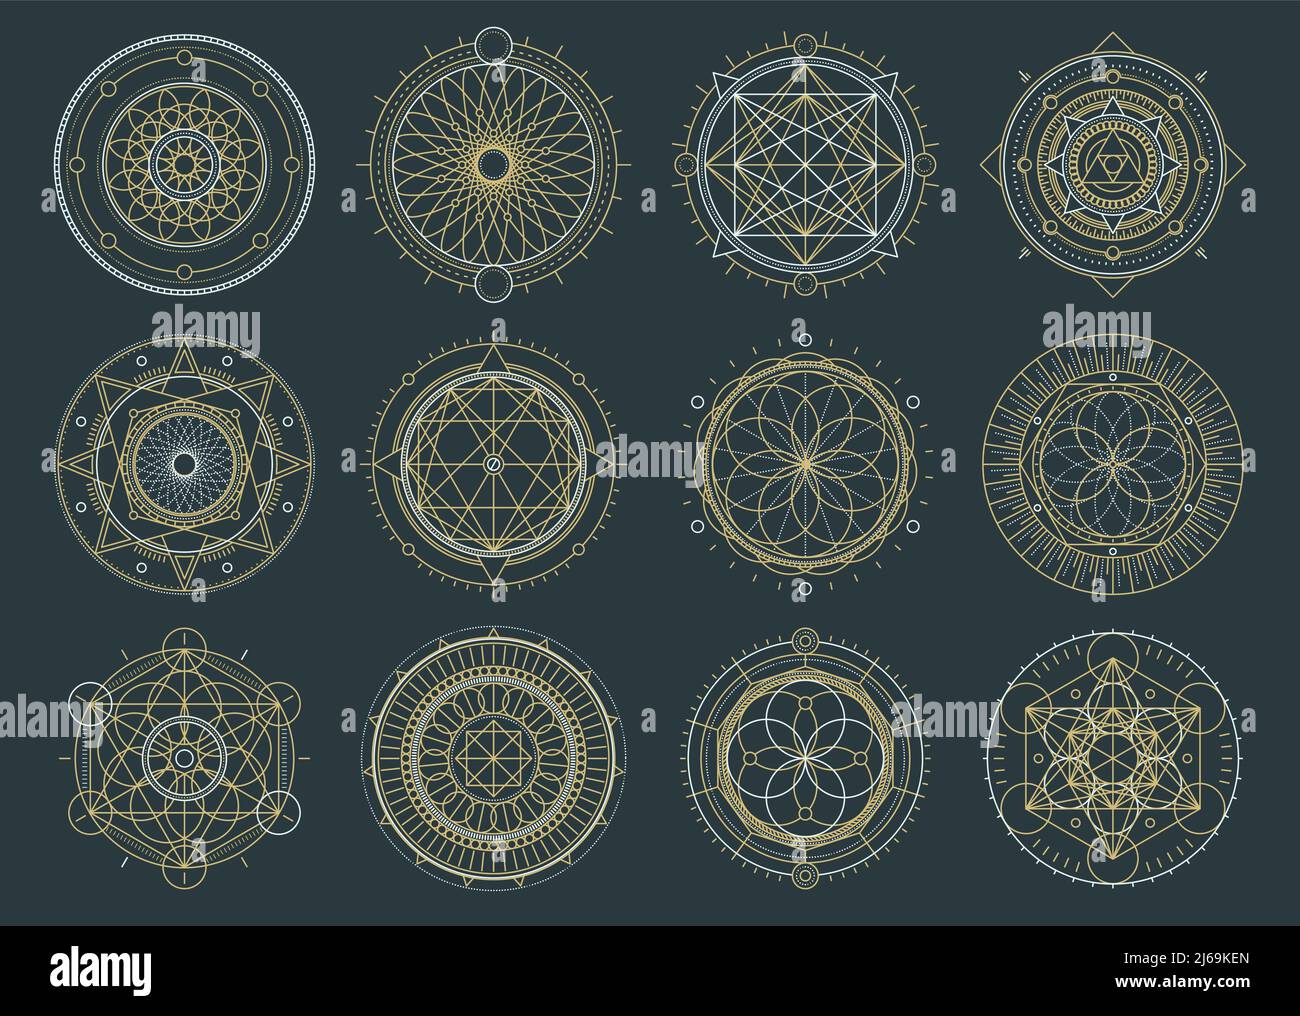 Vektor-Set von heiligen geometrischen Figuren, Traumfänger und mystische Symbole, alchemistische und spirituelle Zeichen Stock Vektor